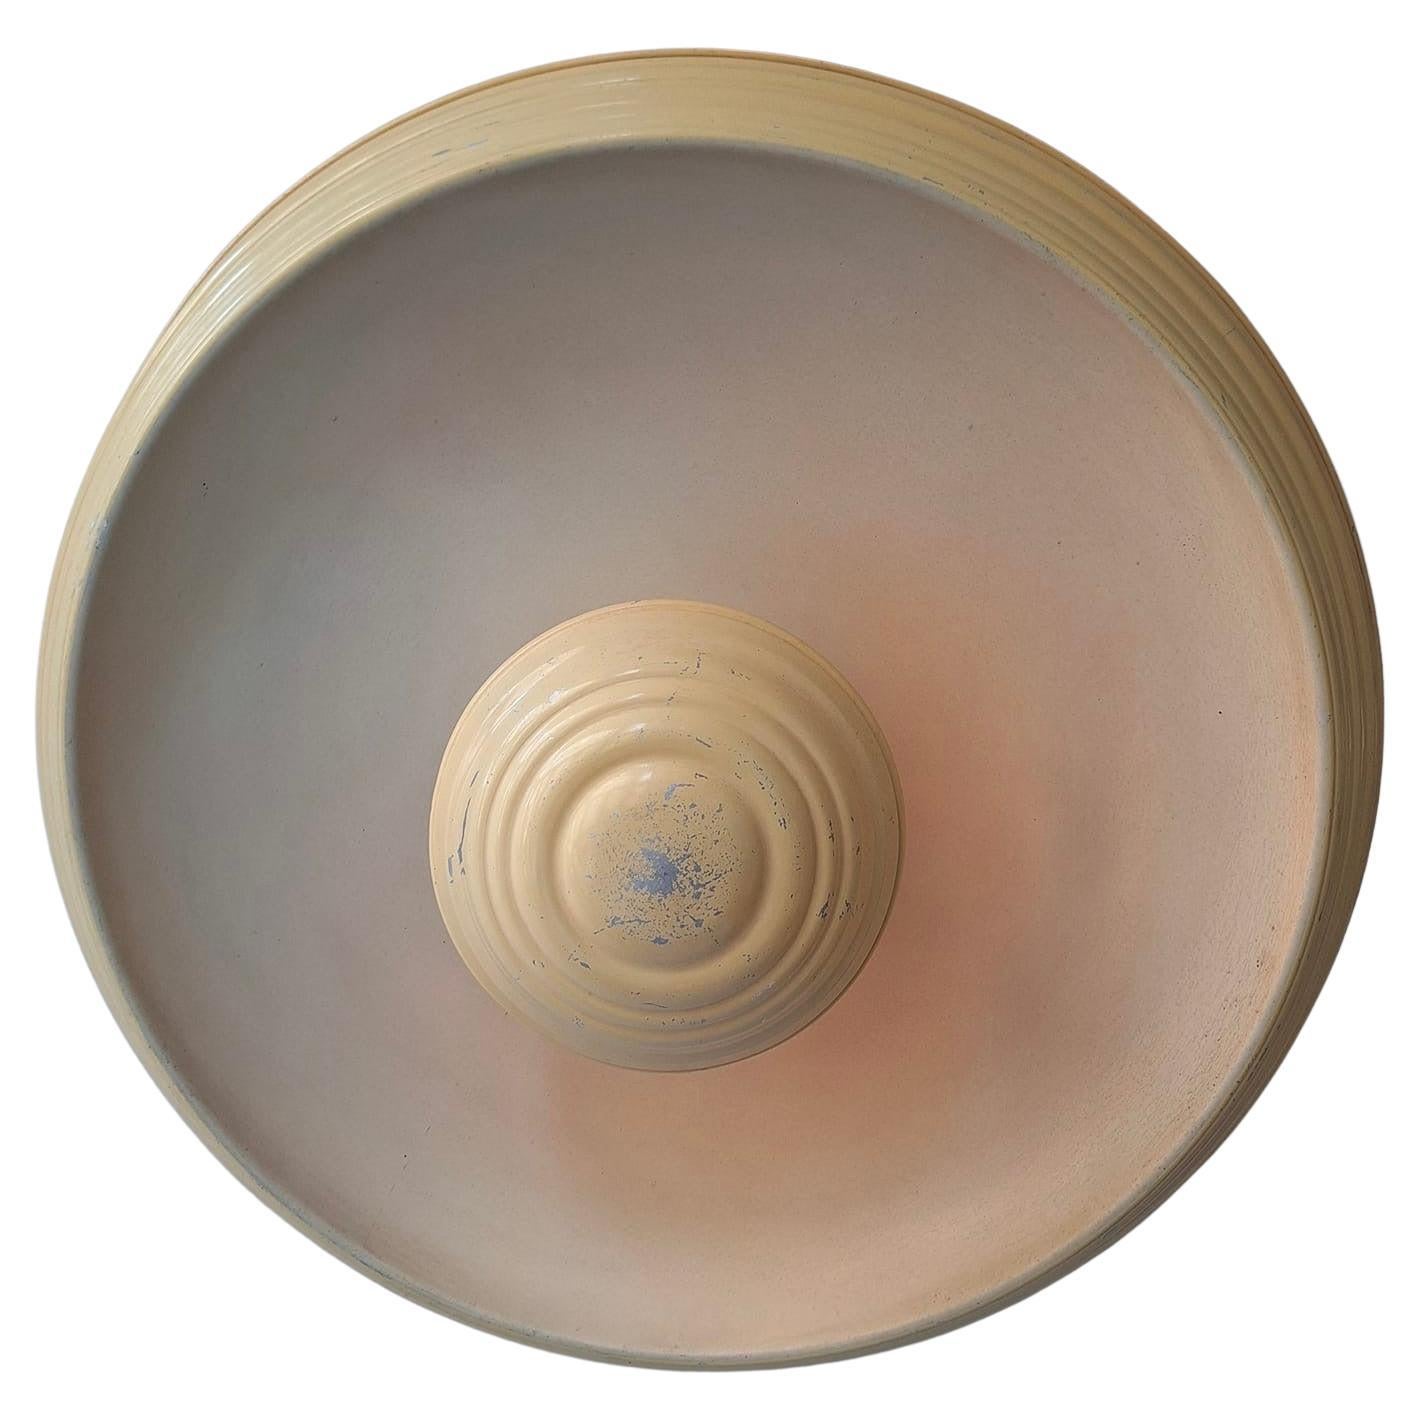 A large round cream-colored art deco ceiling lamp or flush mount.
Belgium, 1920s.

Diameter 31.8